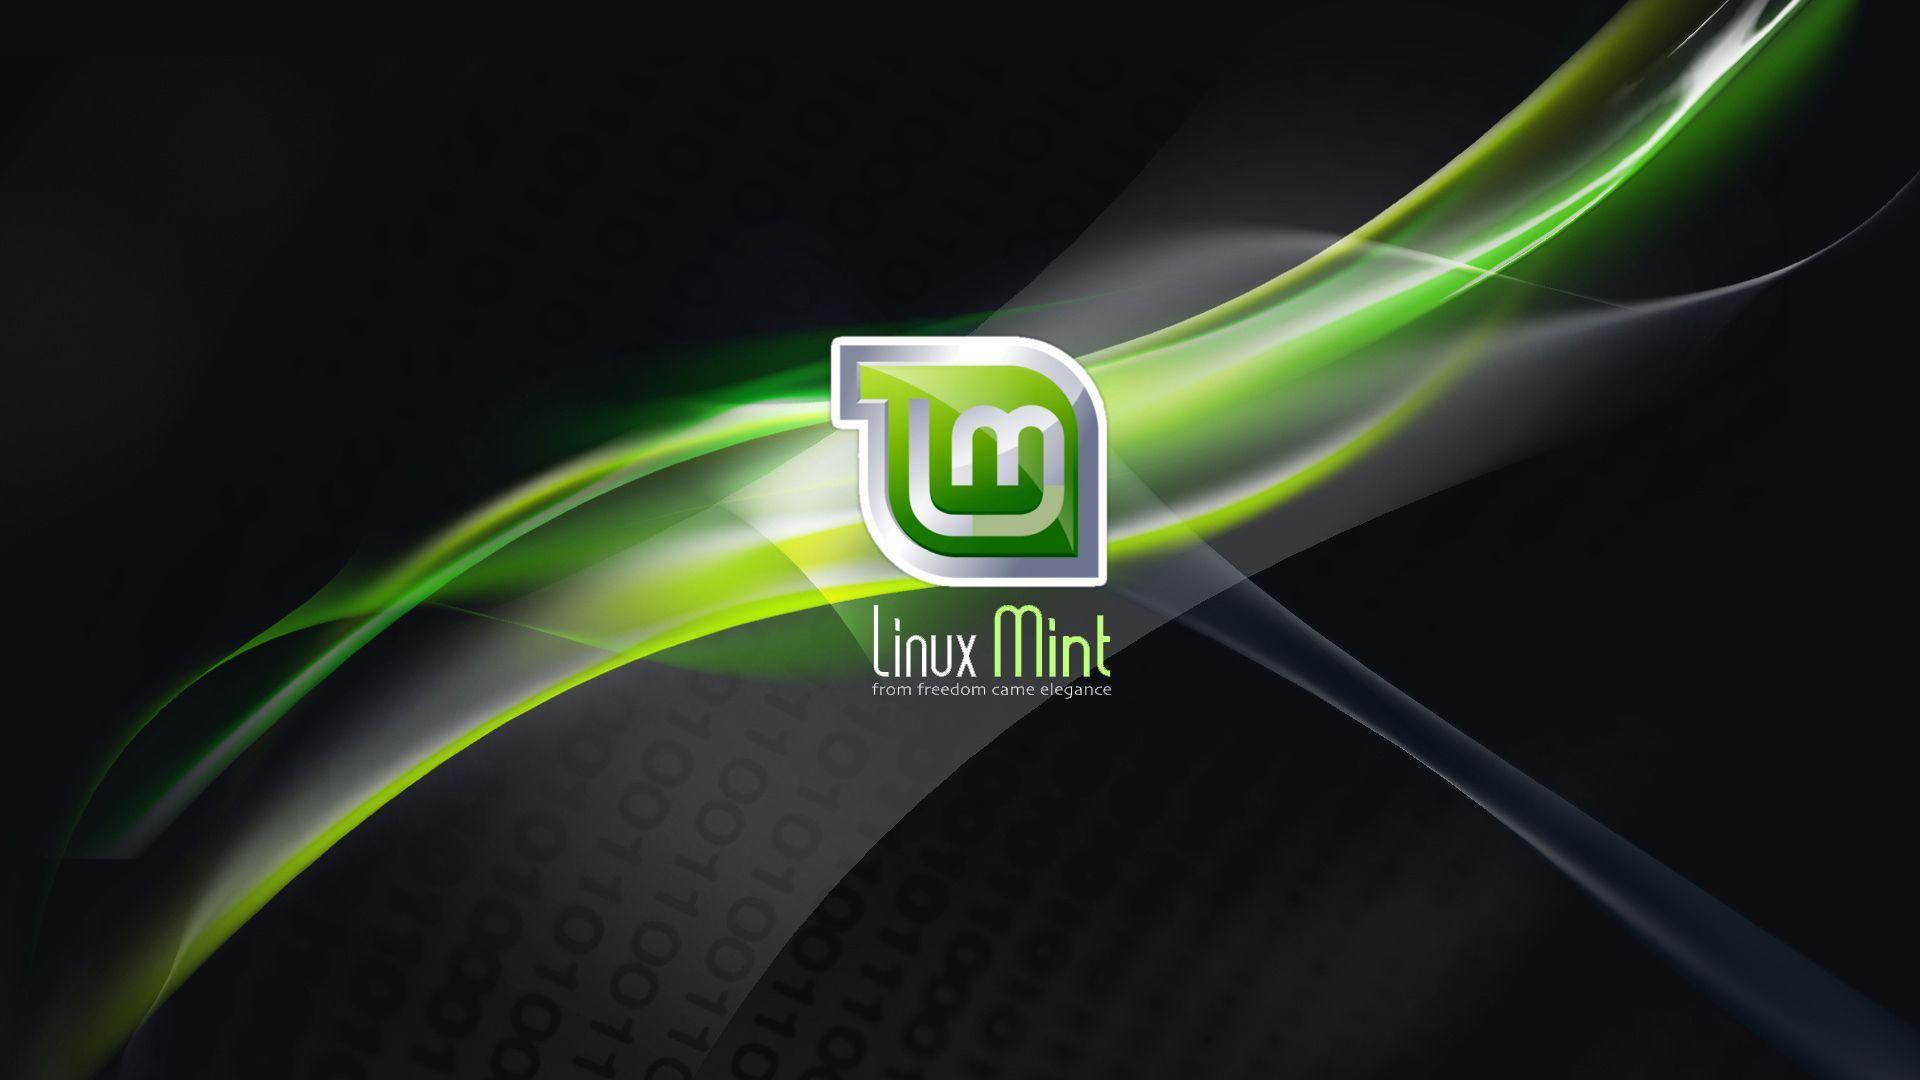 Tìm kiếm những bức hình nền Linux Mint đẹp nhất? Bộ sưu tập hình nền Linux Mint hàng đầu sẽ cung cấp cho bạn những tác phẩm nghệ thuật đẹp mắt và độc đáo nhất từ các nghệ sĩ nổi tiếng. Hãy sử dụng những hình nền Linux Mint hàng đầu để trang trí cho máy tính của bạn.